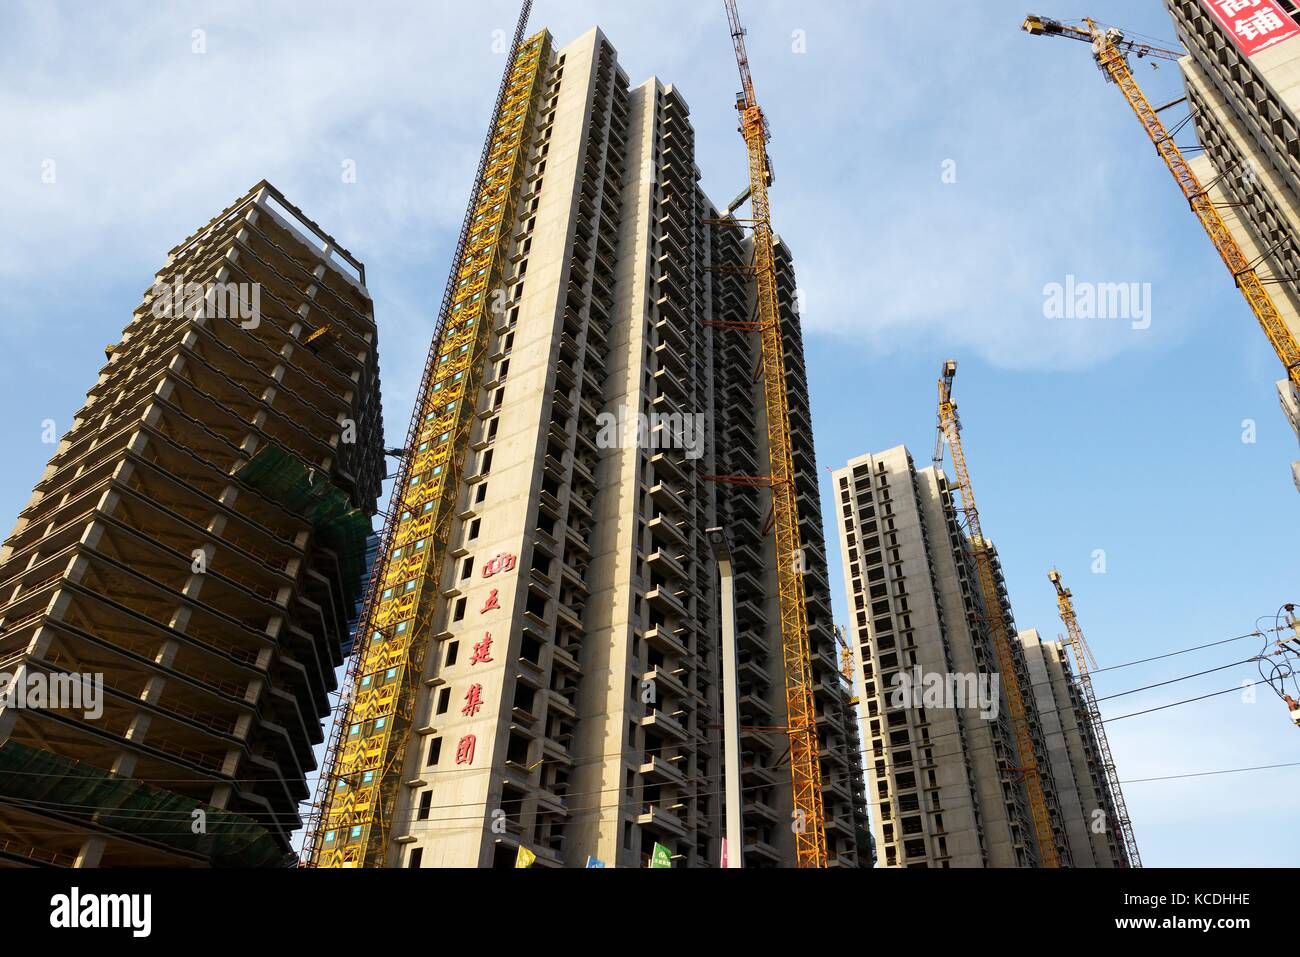 Ciudad de Taiyuan, Shanxi, China. nuevo y en construcción de bloques de apartamentos de gran altura, algunos alojamientos son propiedad del sector privado ventures Foto de stock